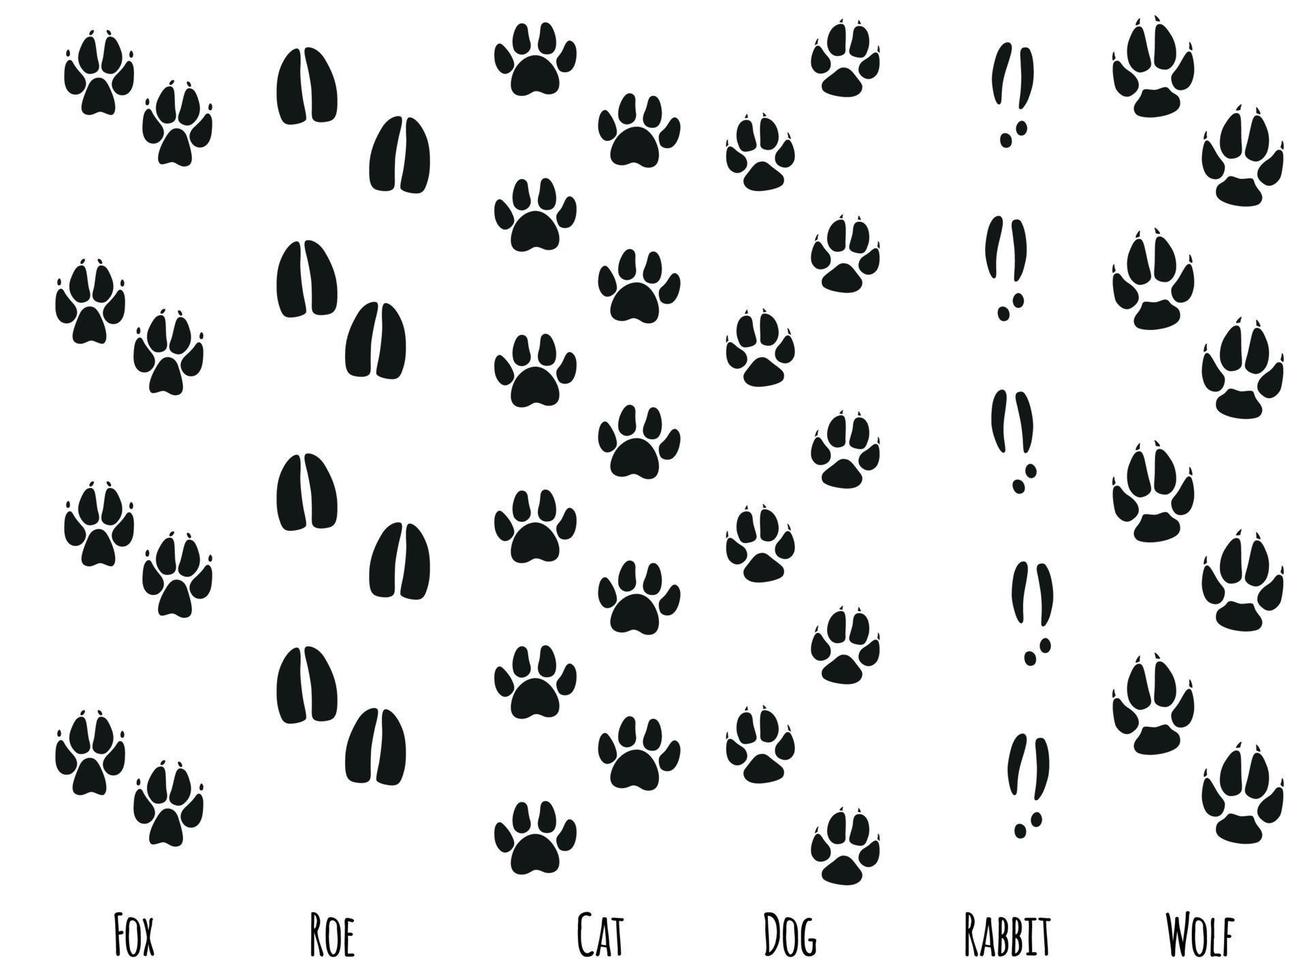 huellas de pies de animales. patas de animales y sillhouetts. ilustración vectorial vector